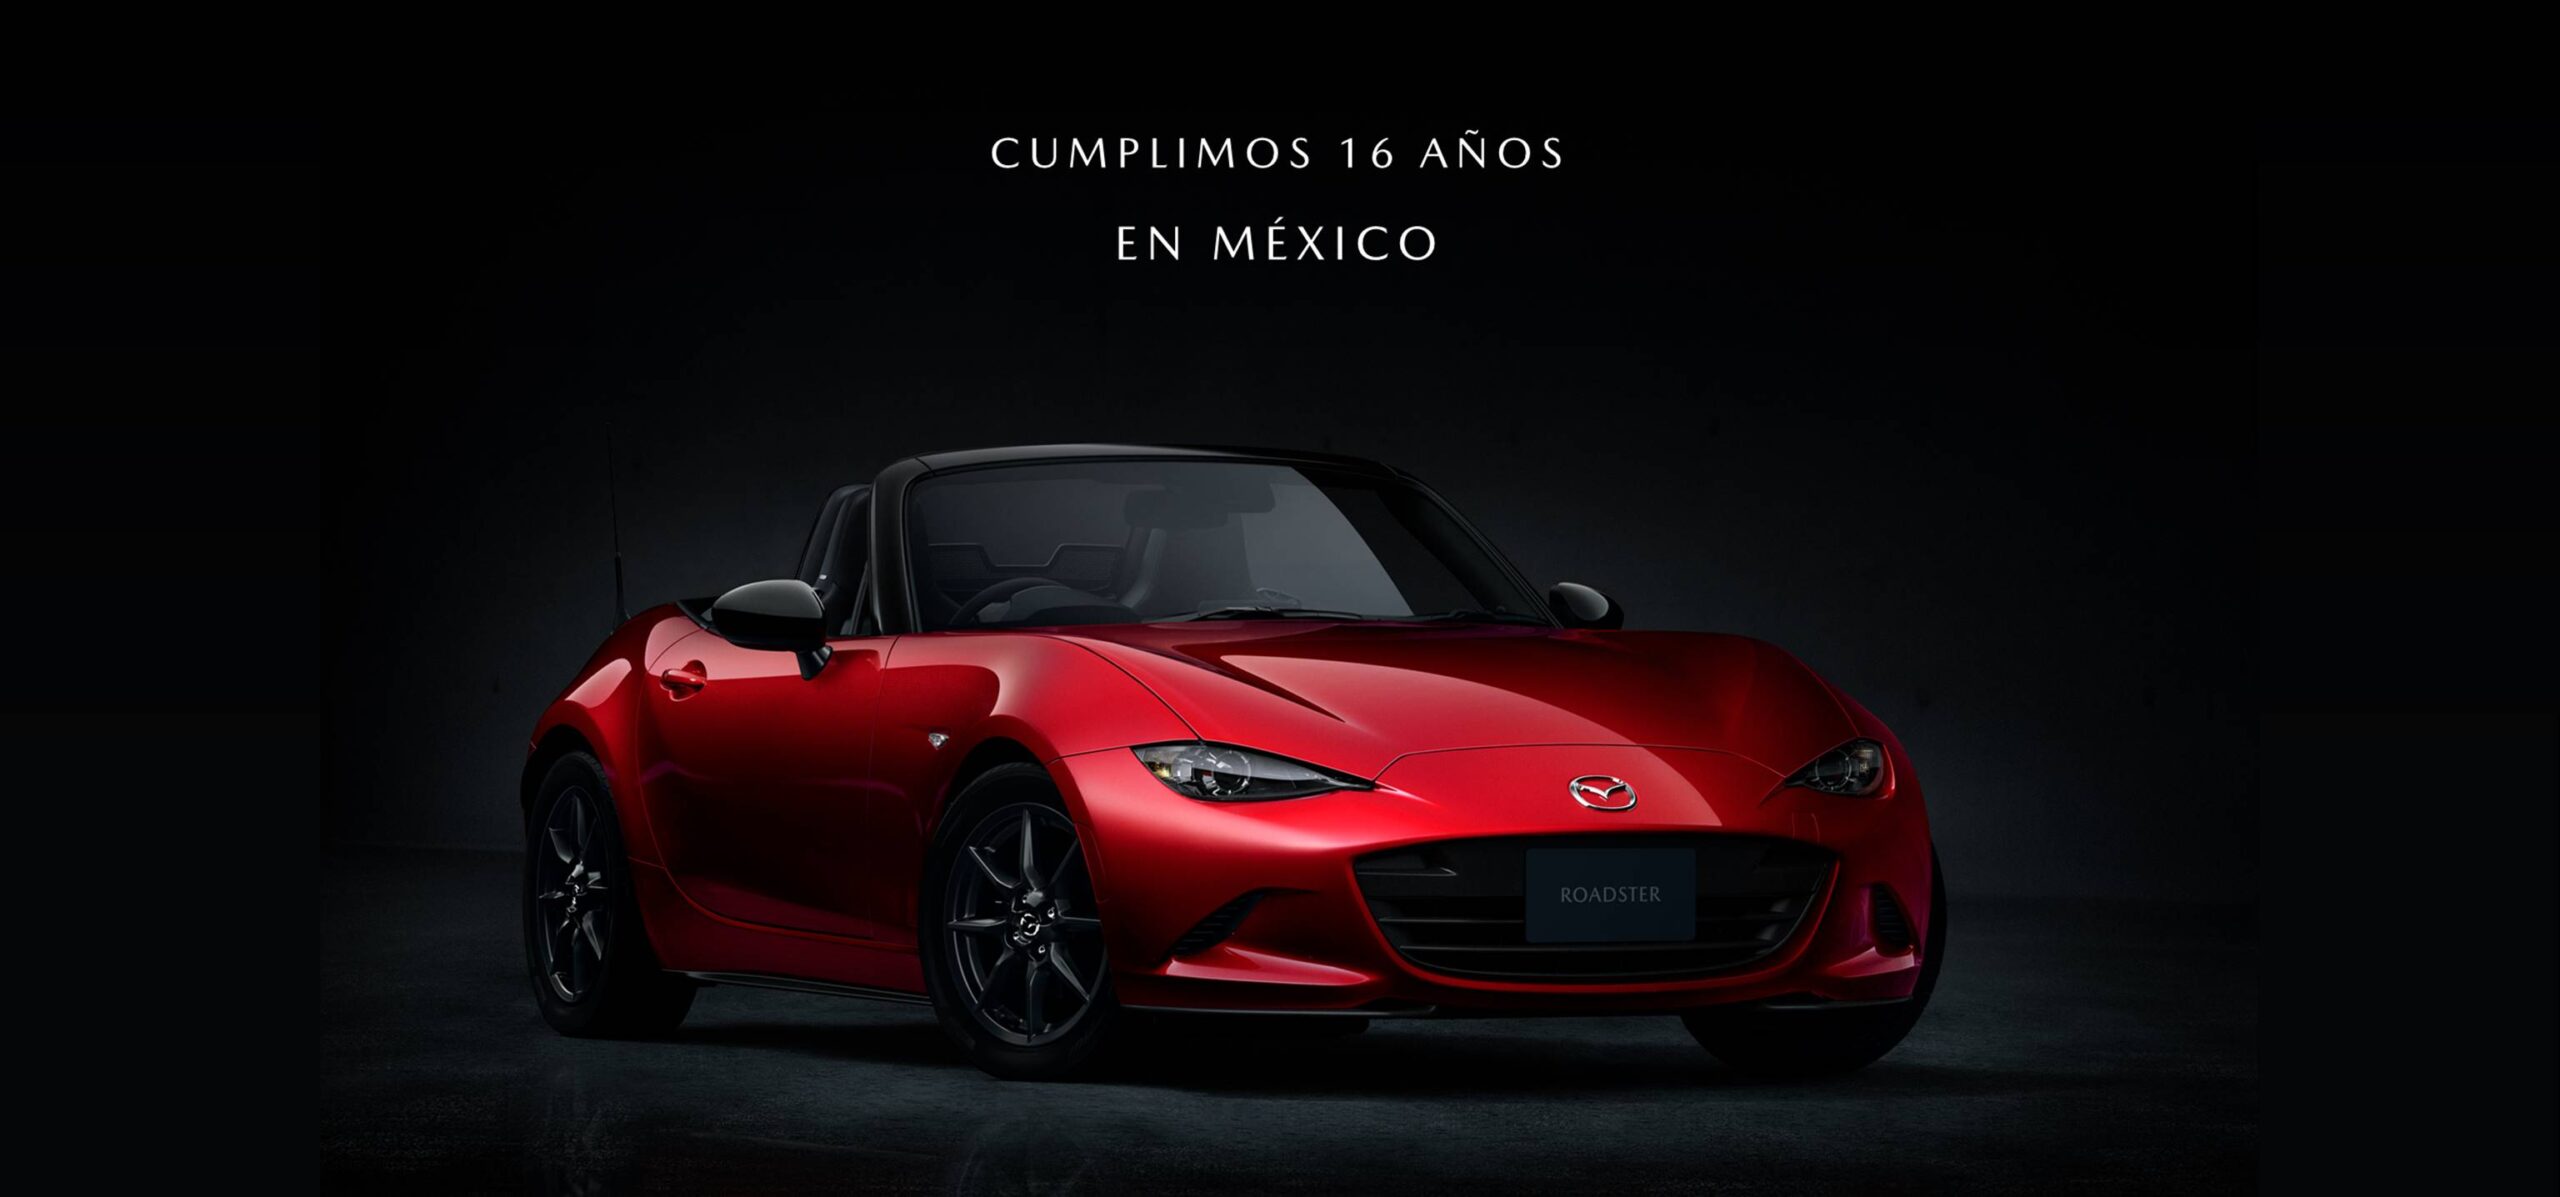 ¡Mazda cumple 16 años en México!